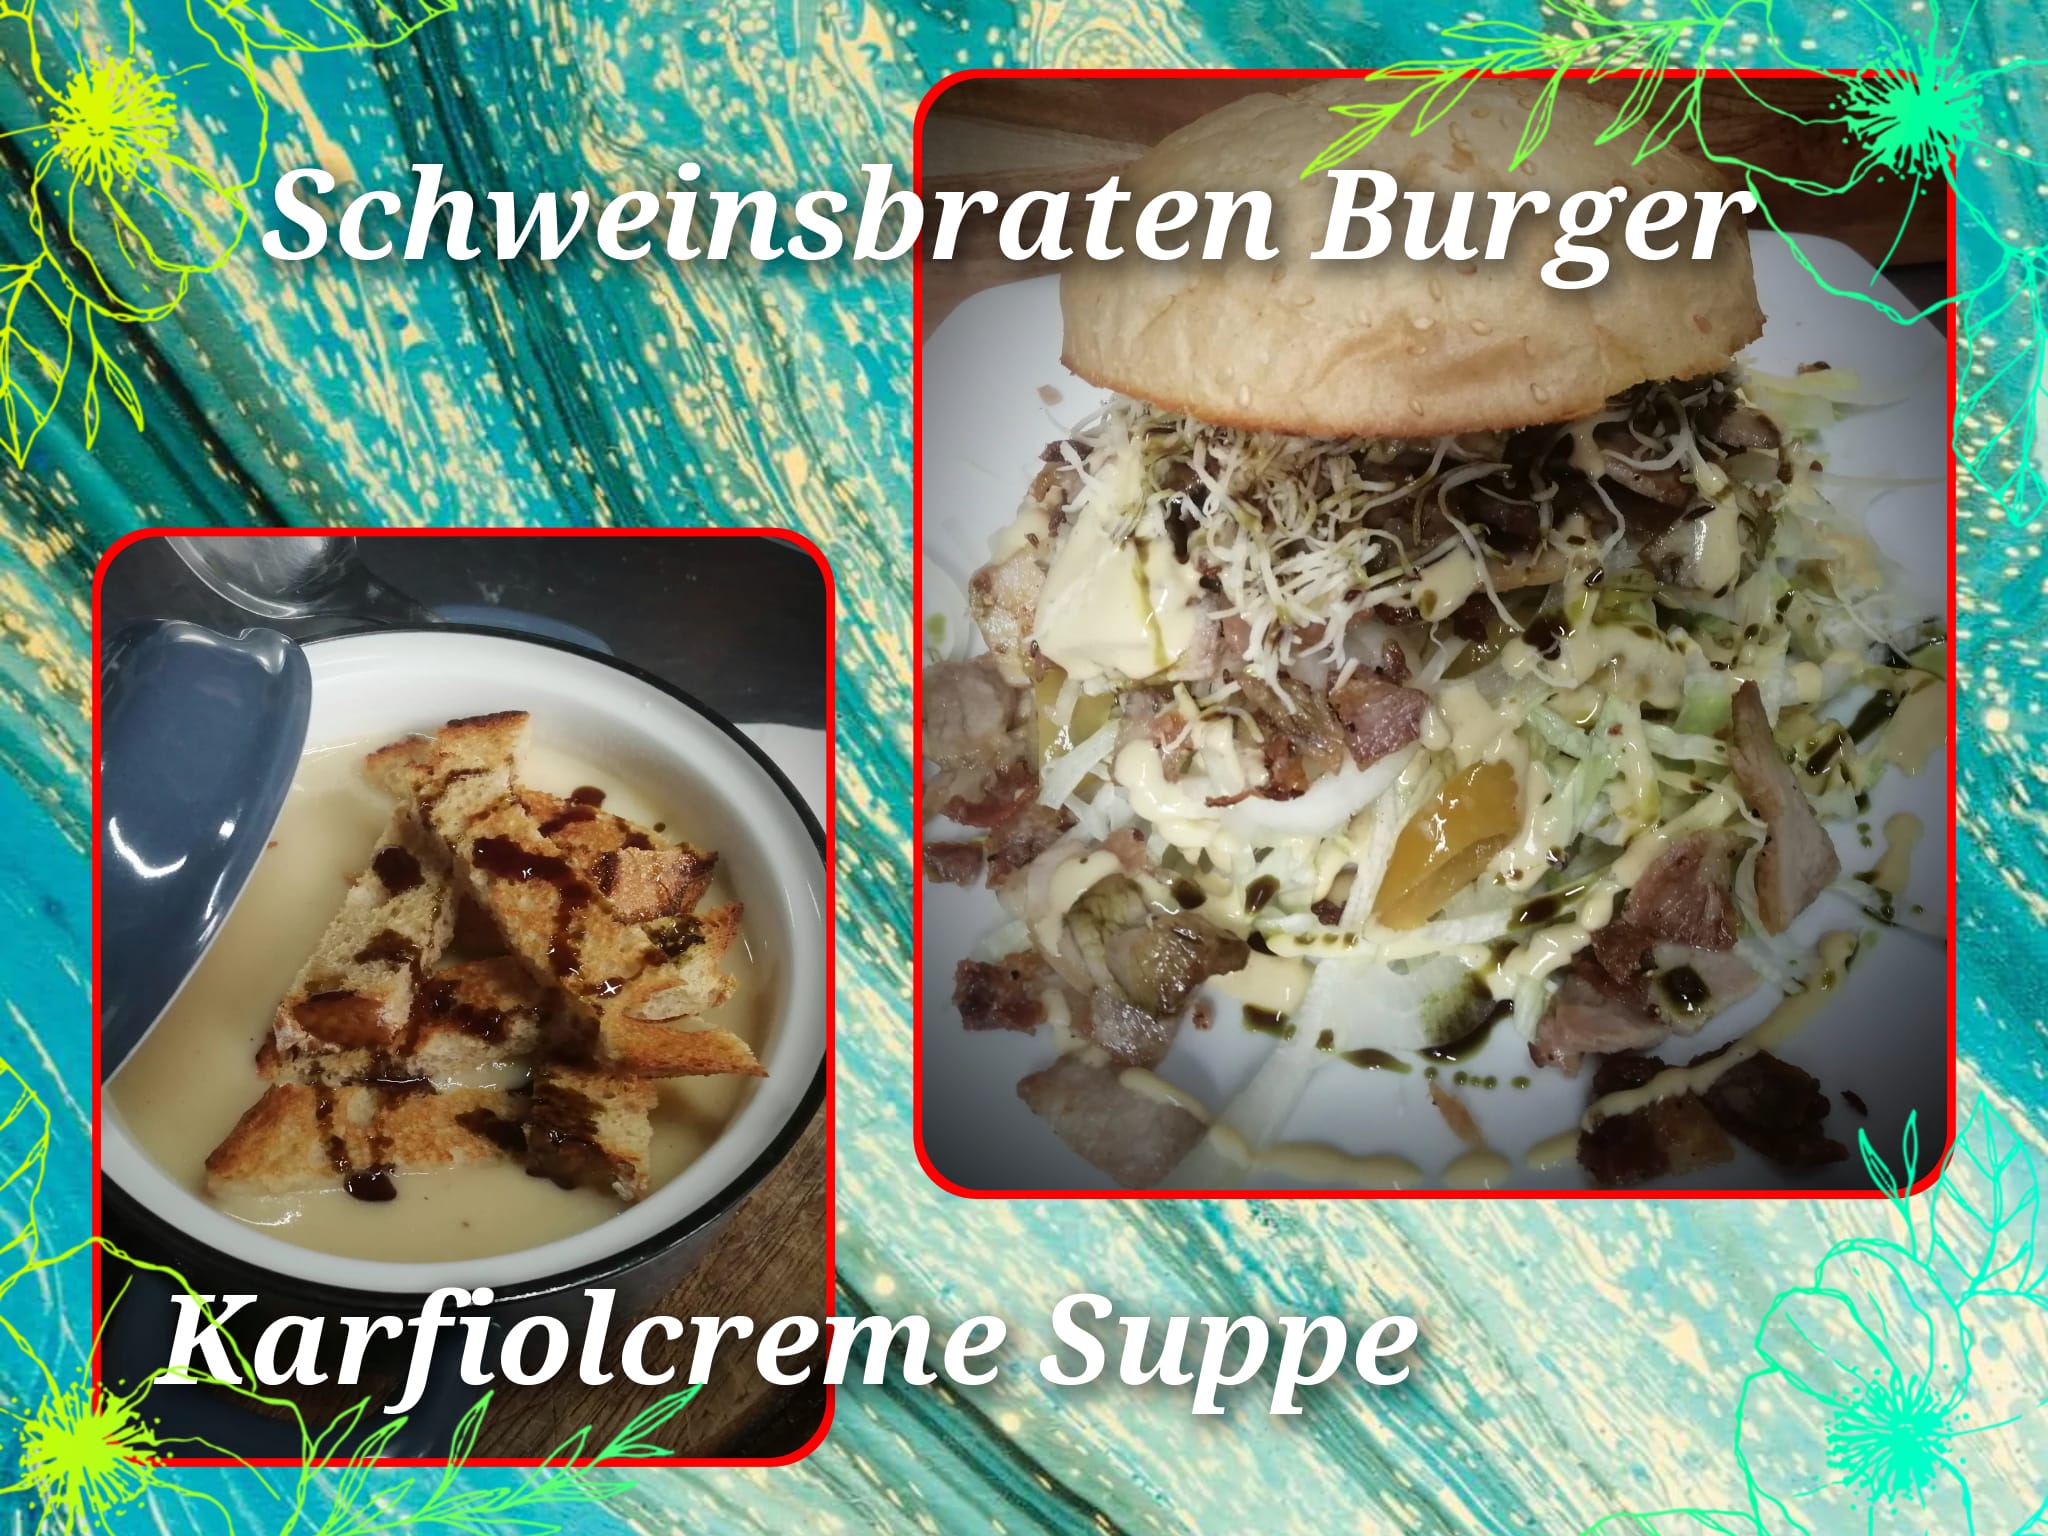 Karfiolcremesuppe und Schweinsbratenburger